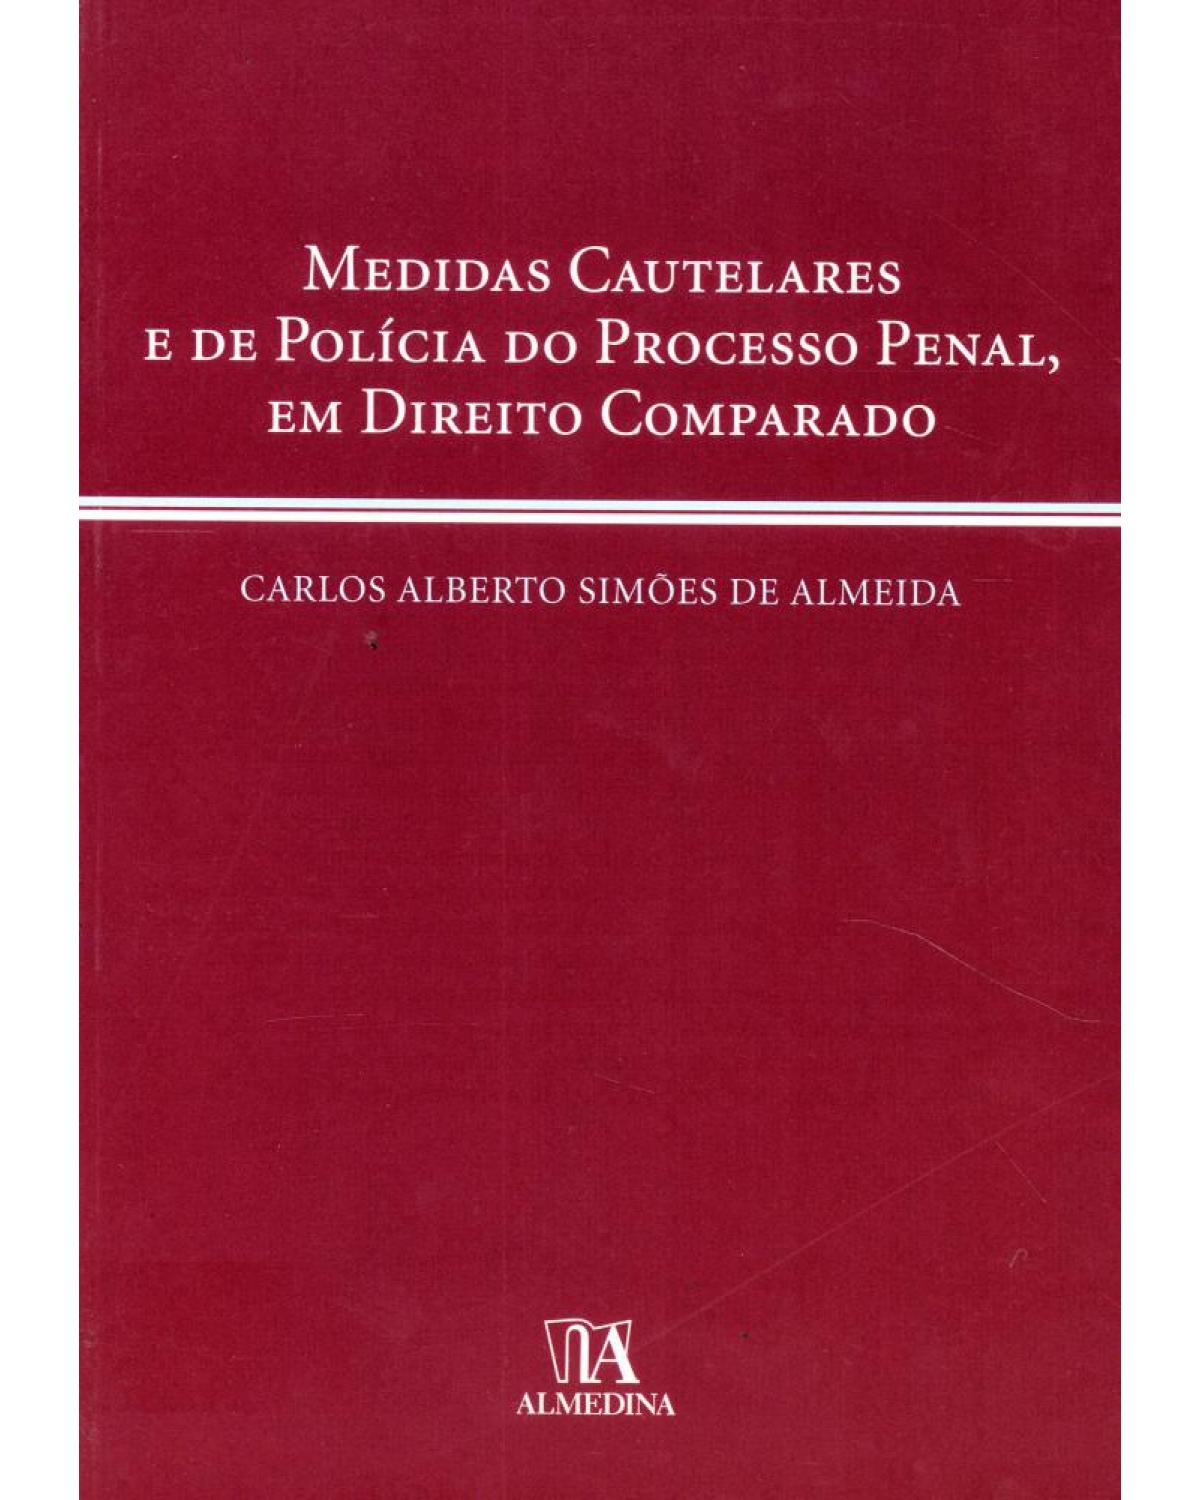 Medidas cautelares e de política do processo penal, em direito comparado - 1ª Edição